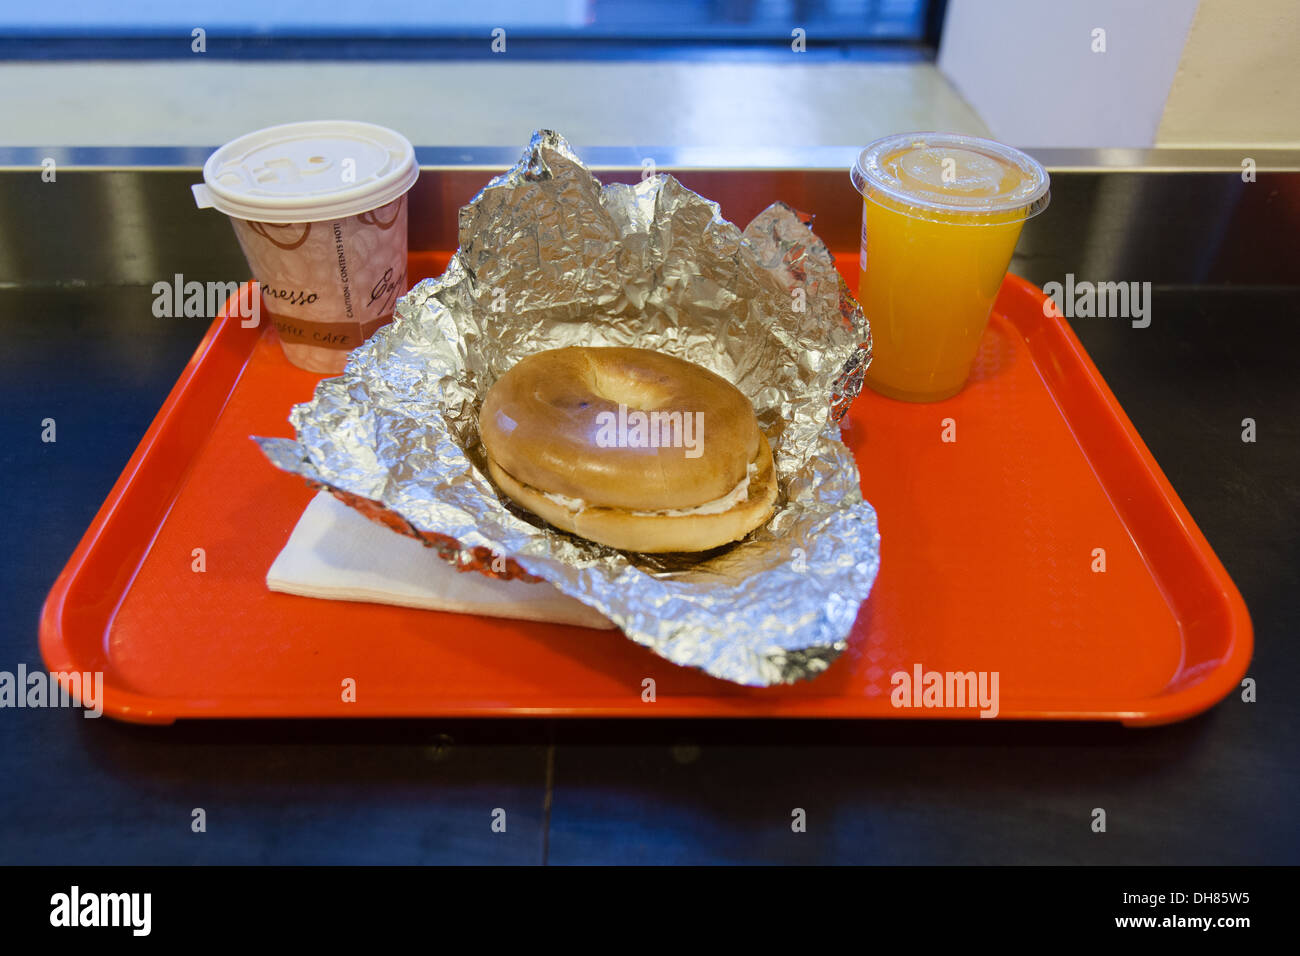 Frühstück Bagel bei Dali Markt Feinkost, 7th Avenue, New York City, Vereinigte Staaten von Amerika. Stockfoto